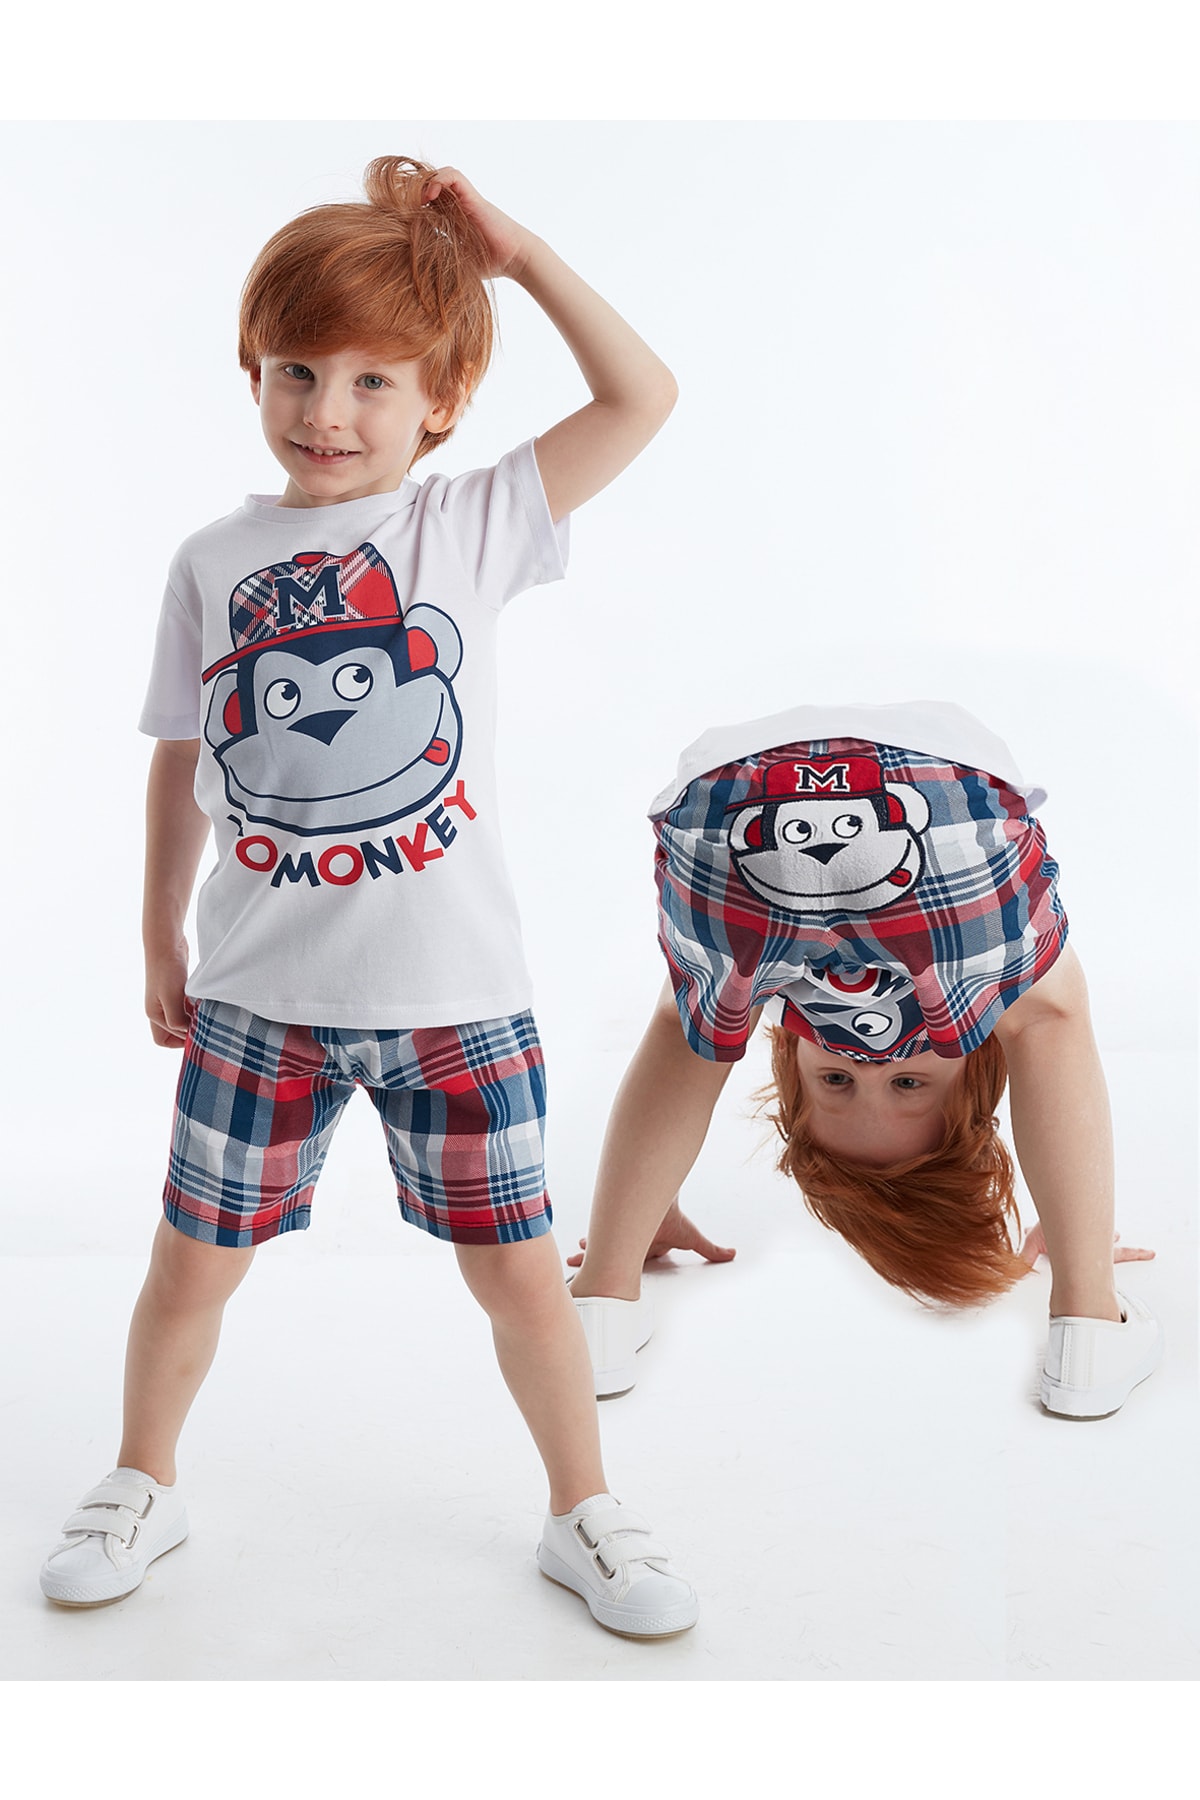 Levně Denokids Monkey Plaid Boy's T-shirt Shorts Set